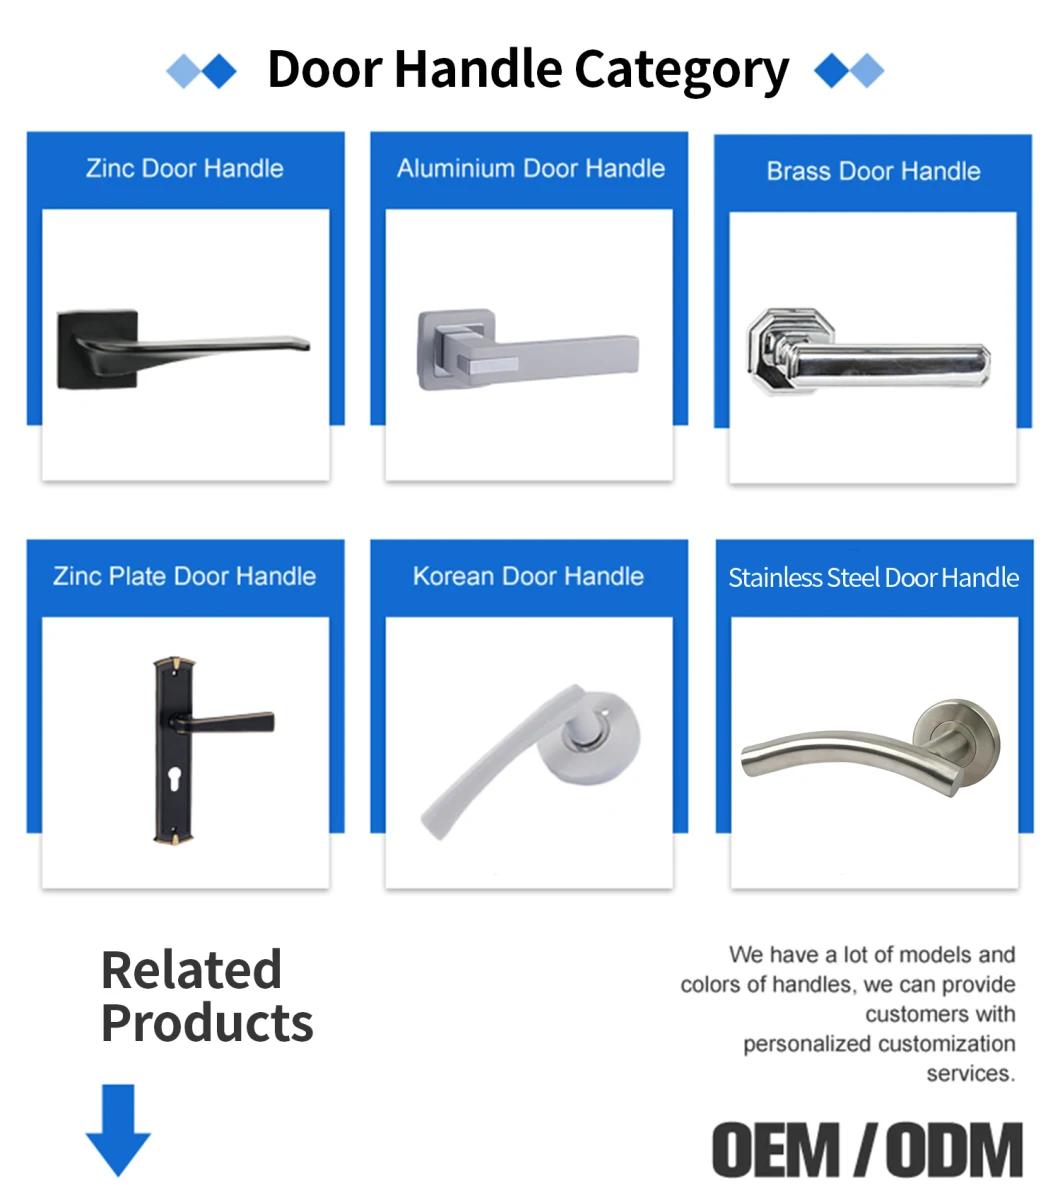 Hot Sales Silver Bright Zinc Door Handle for Iron/Wooden Door